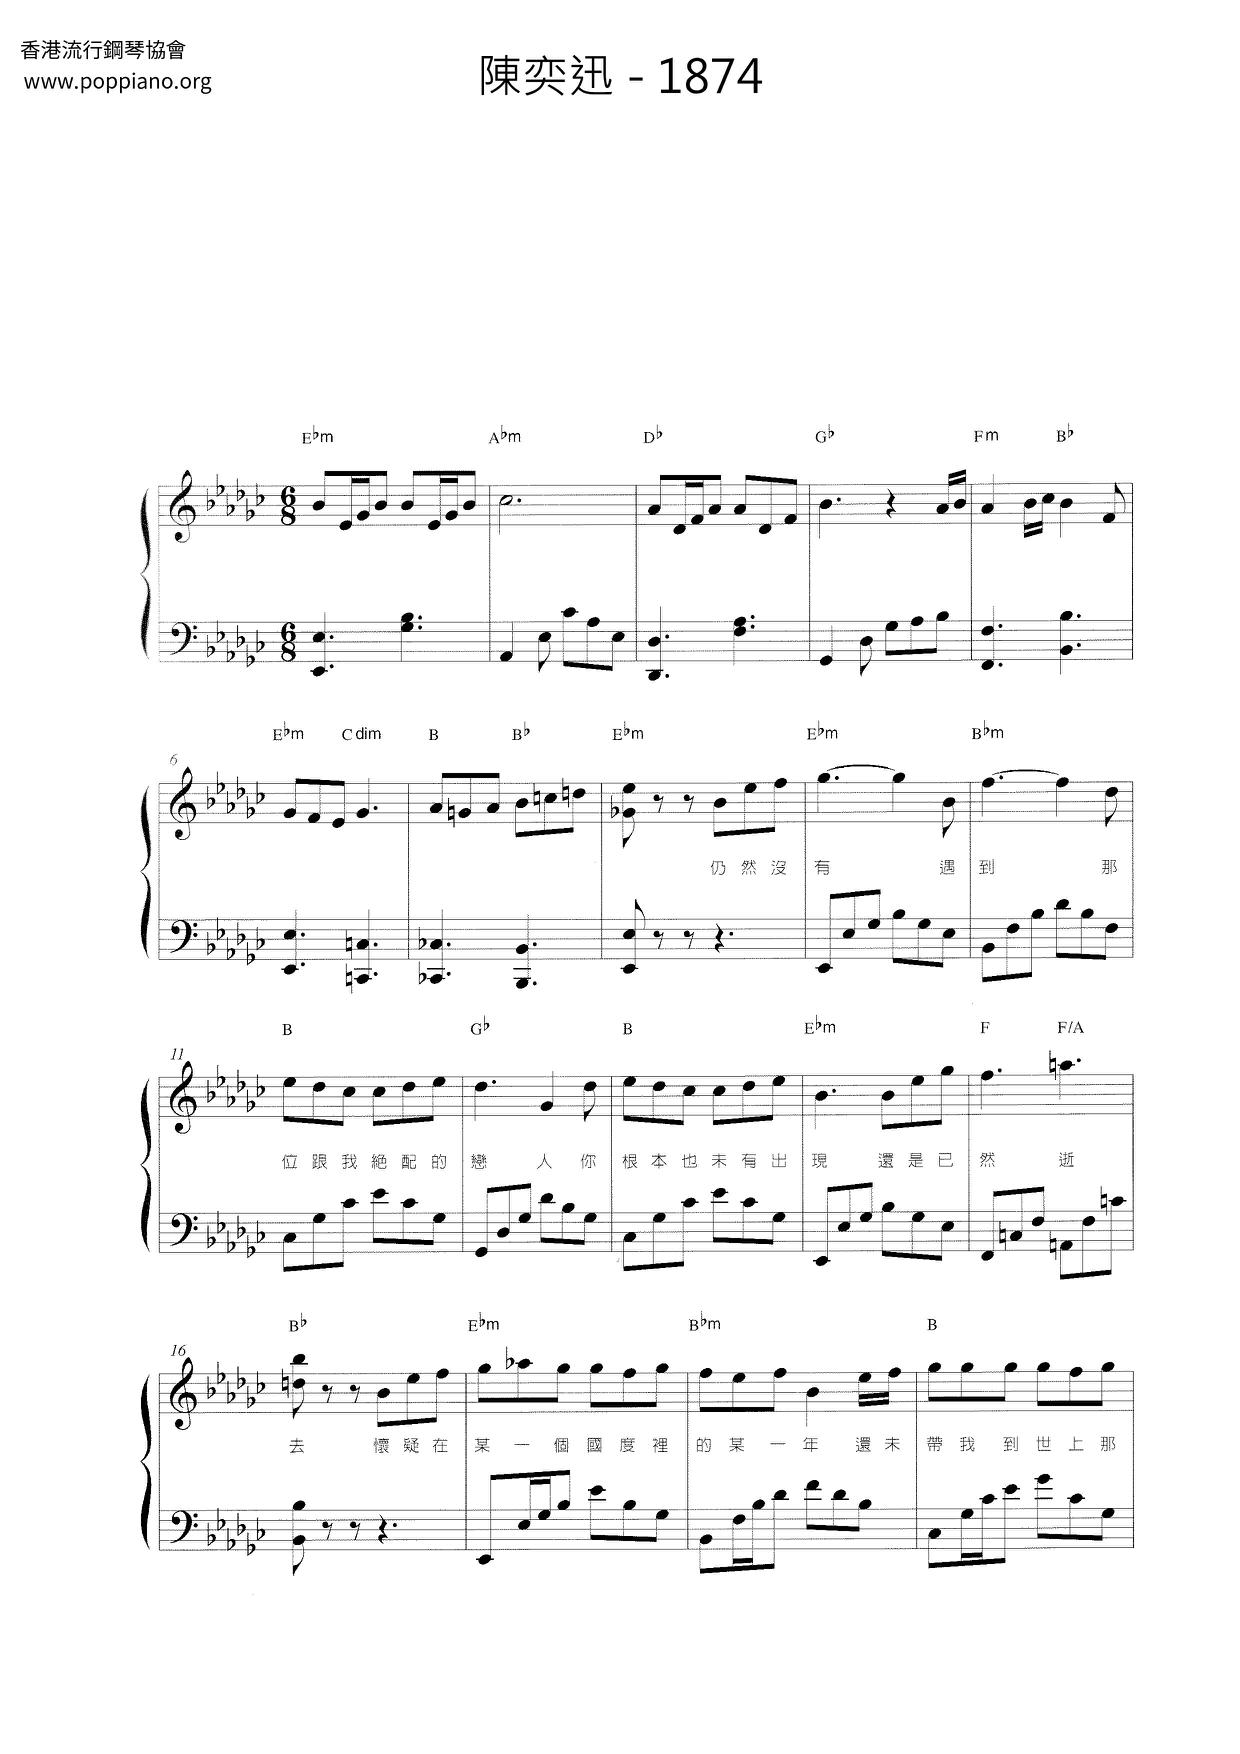 1874 Score